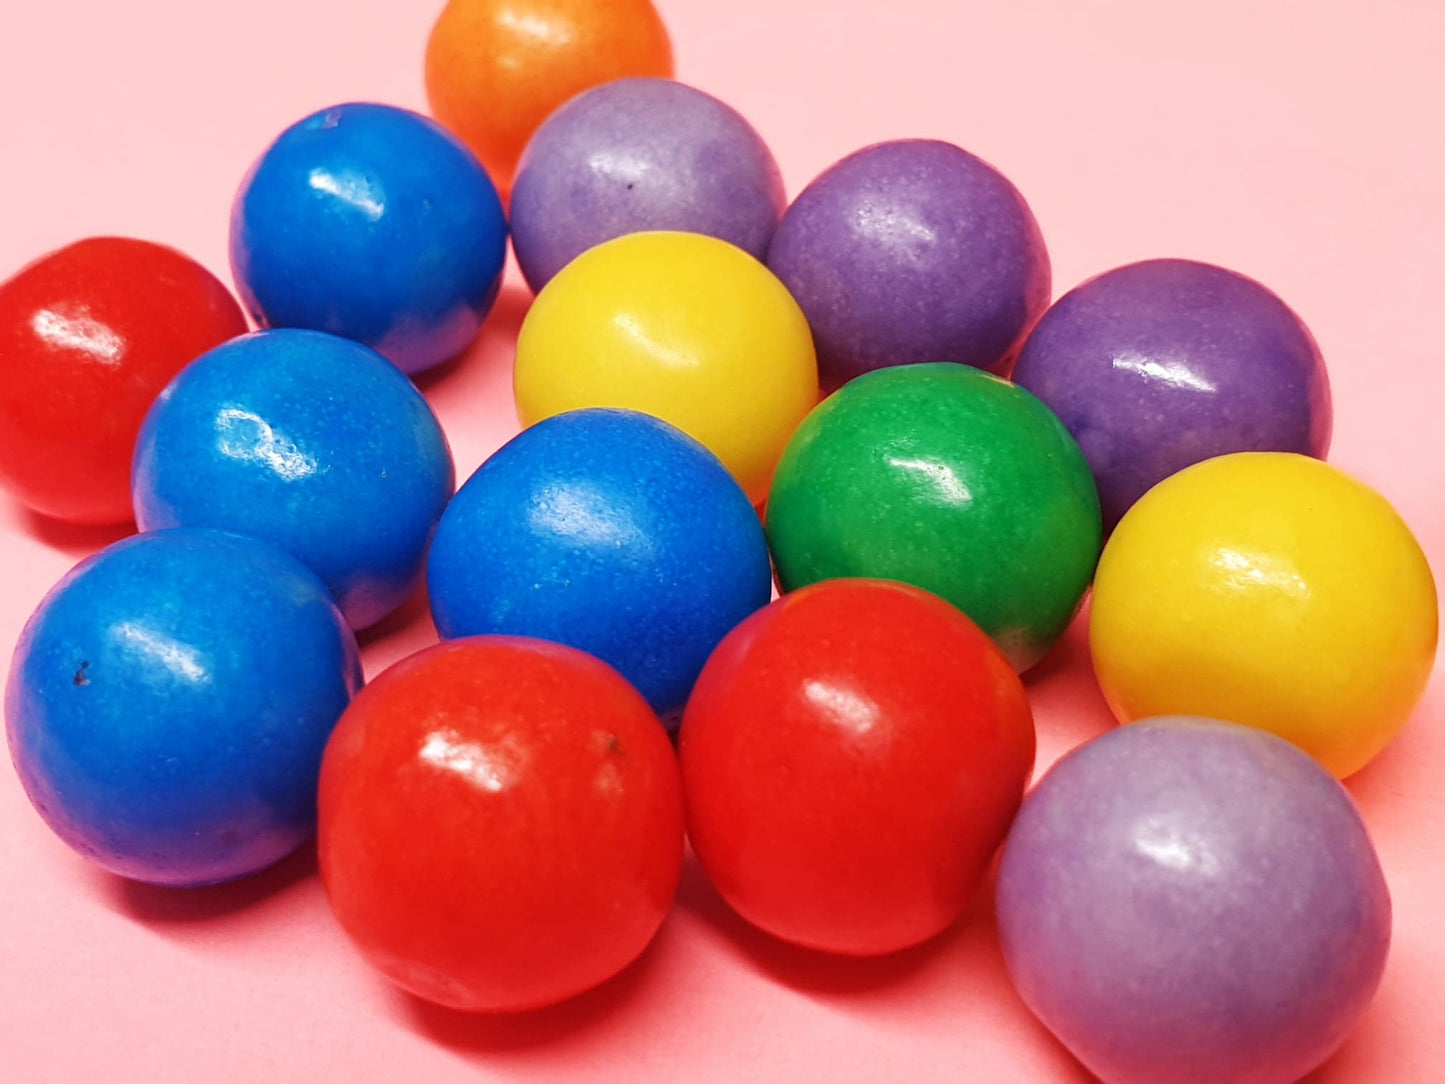 Fizzy Gum Balls